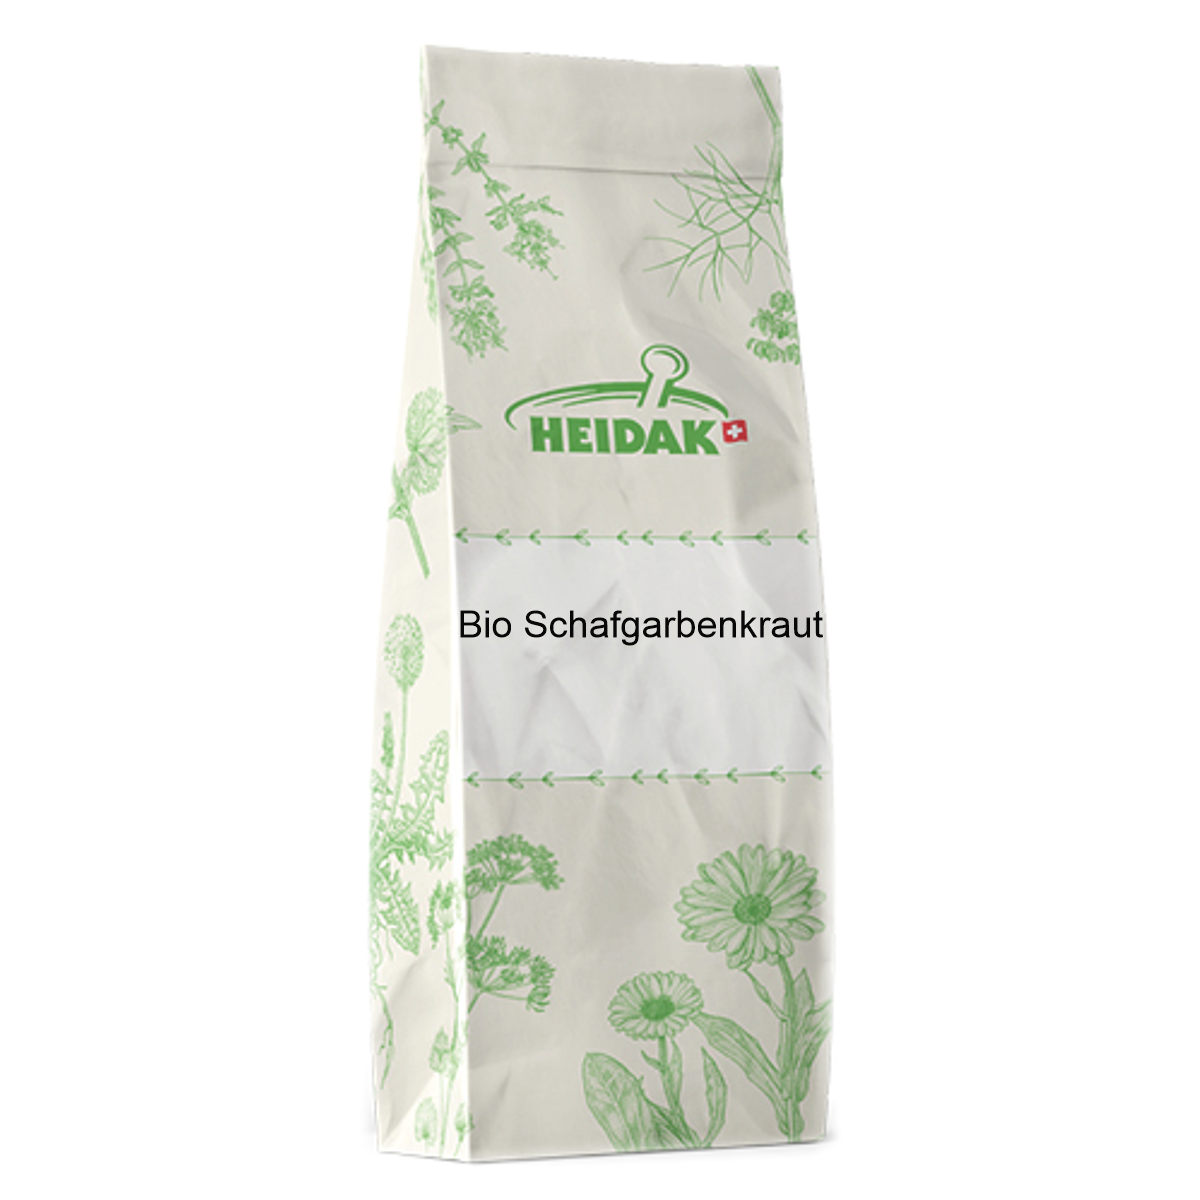 Heidak_Bio_Schafgarbenkraut_online_kaufen